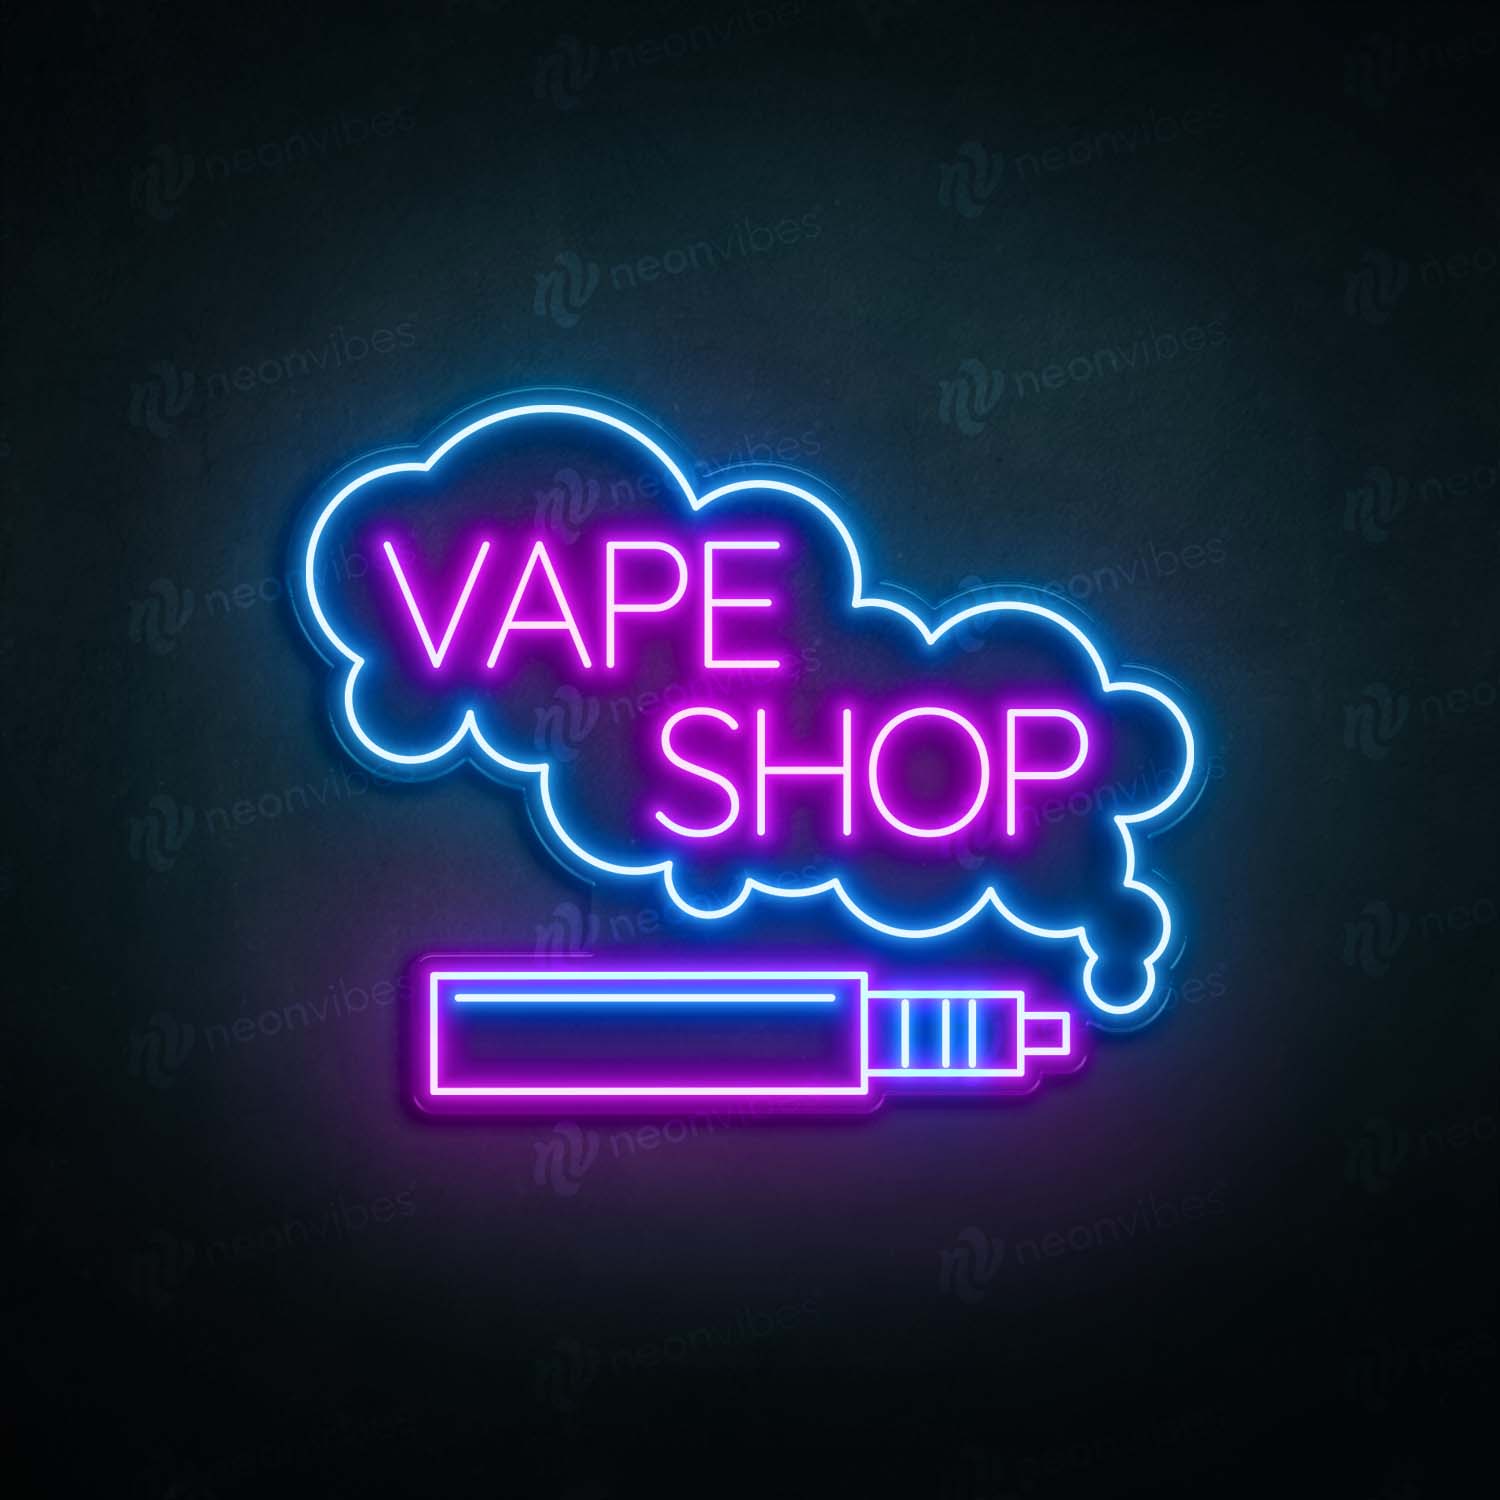 Vape Shop V1 neon sign